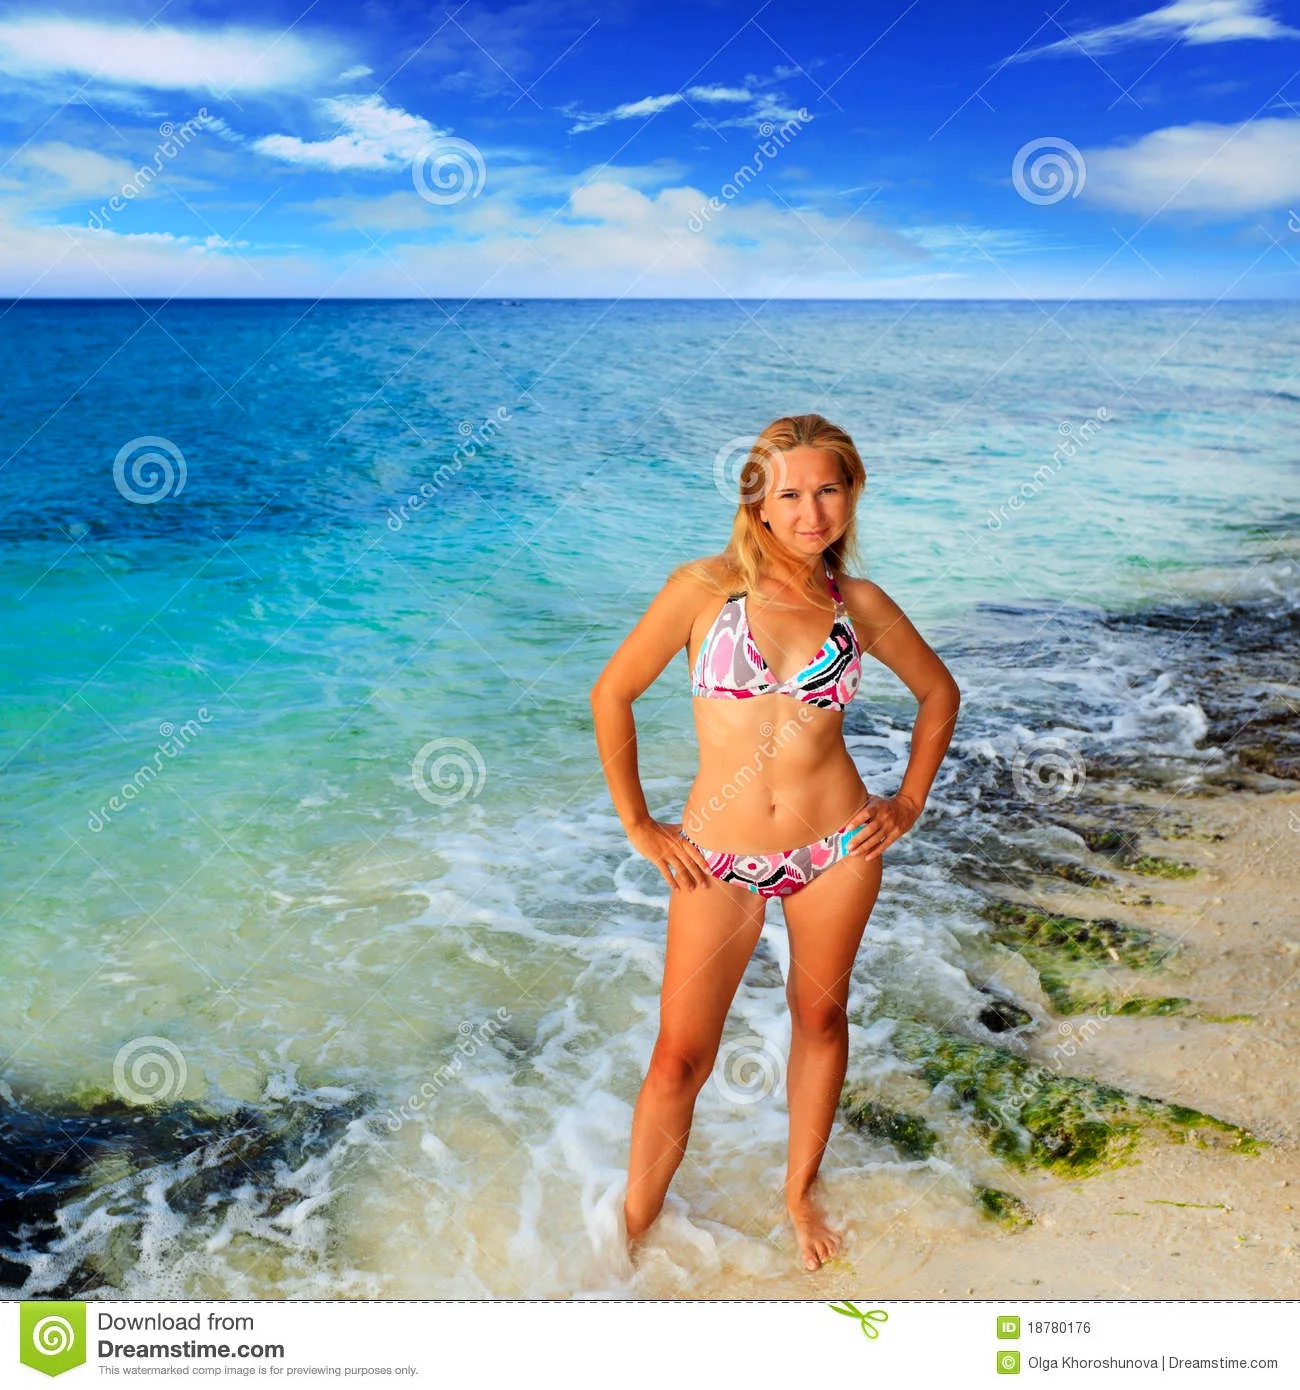 Ольга Копосова в купальнике на пляже